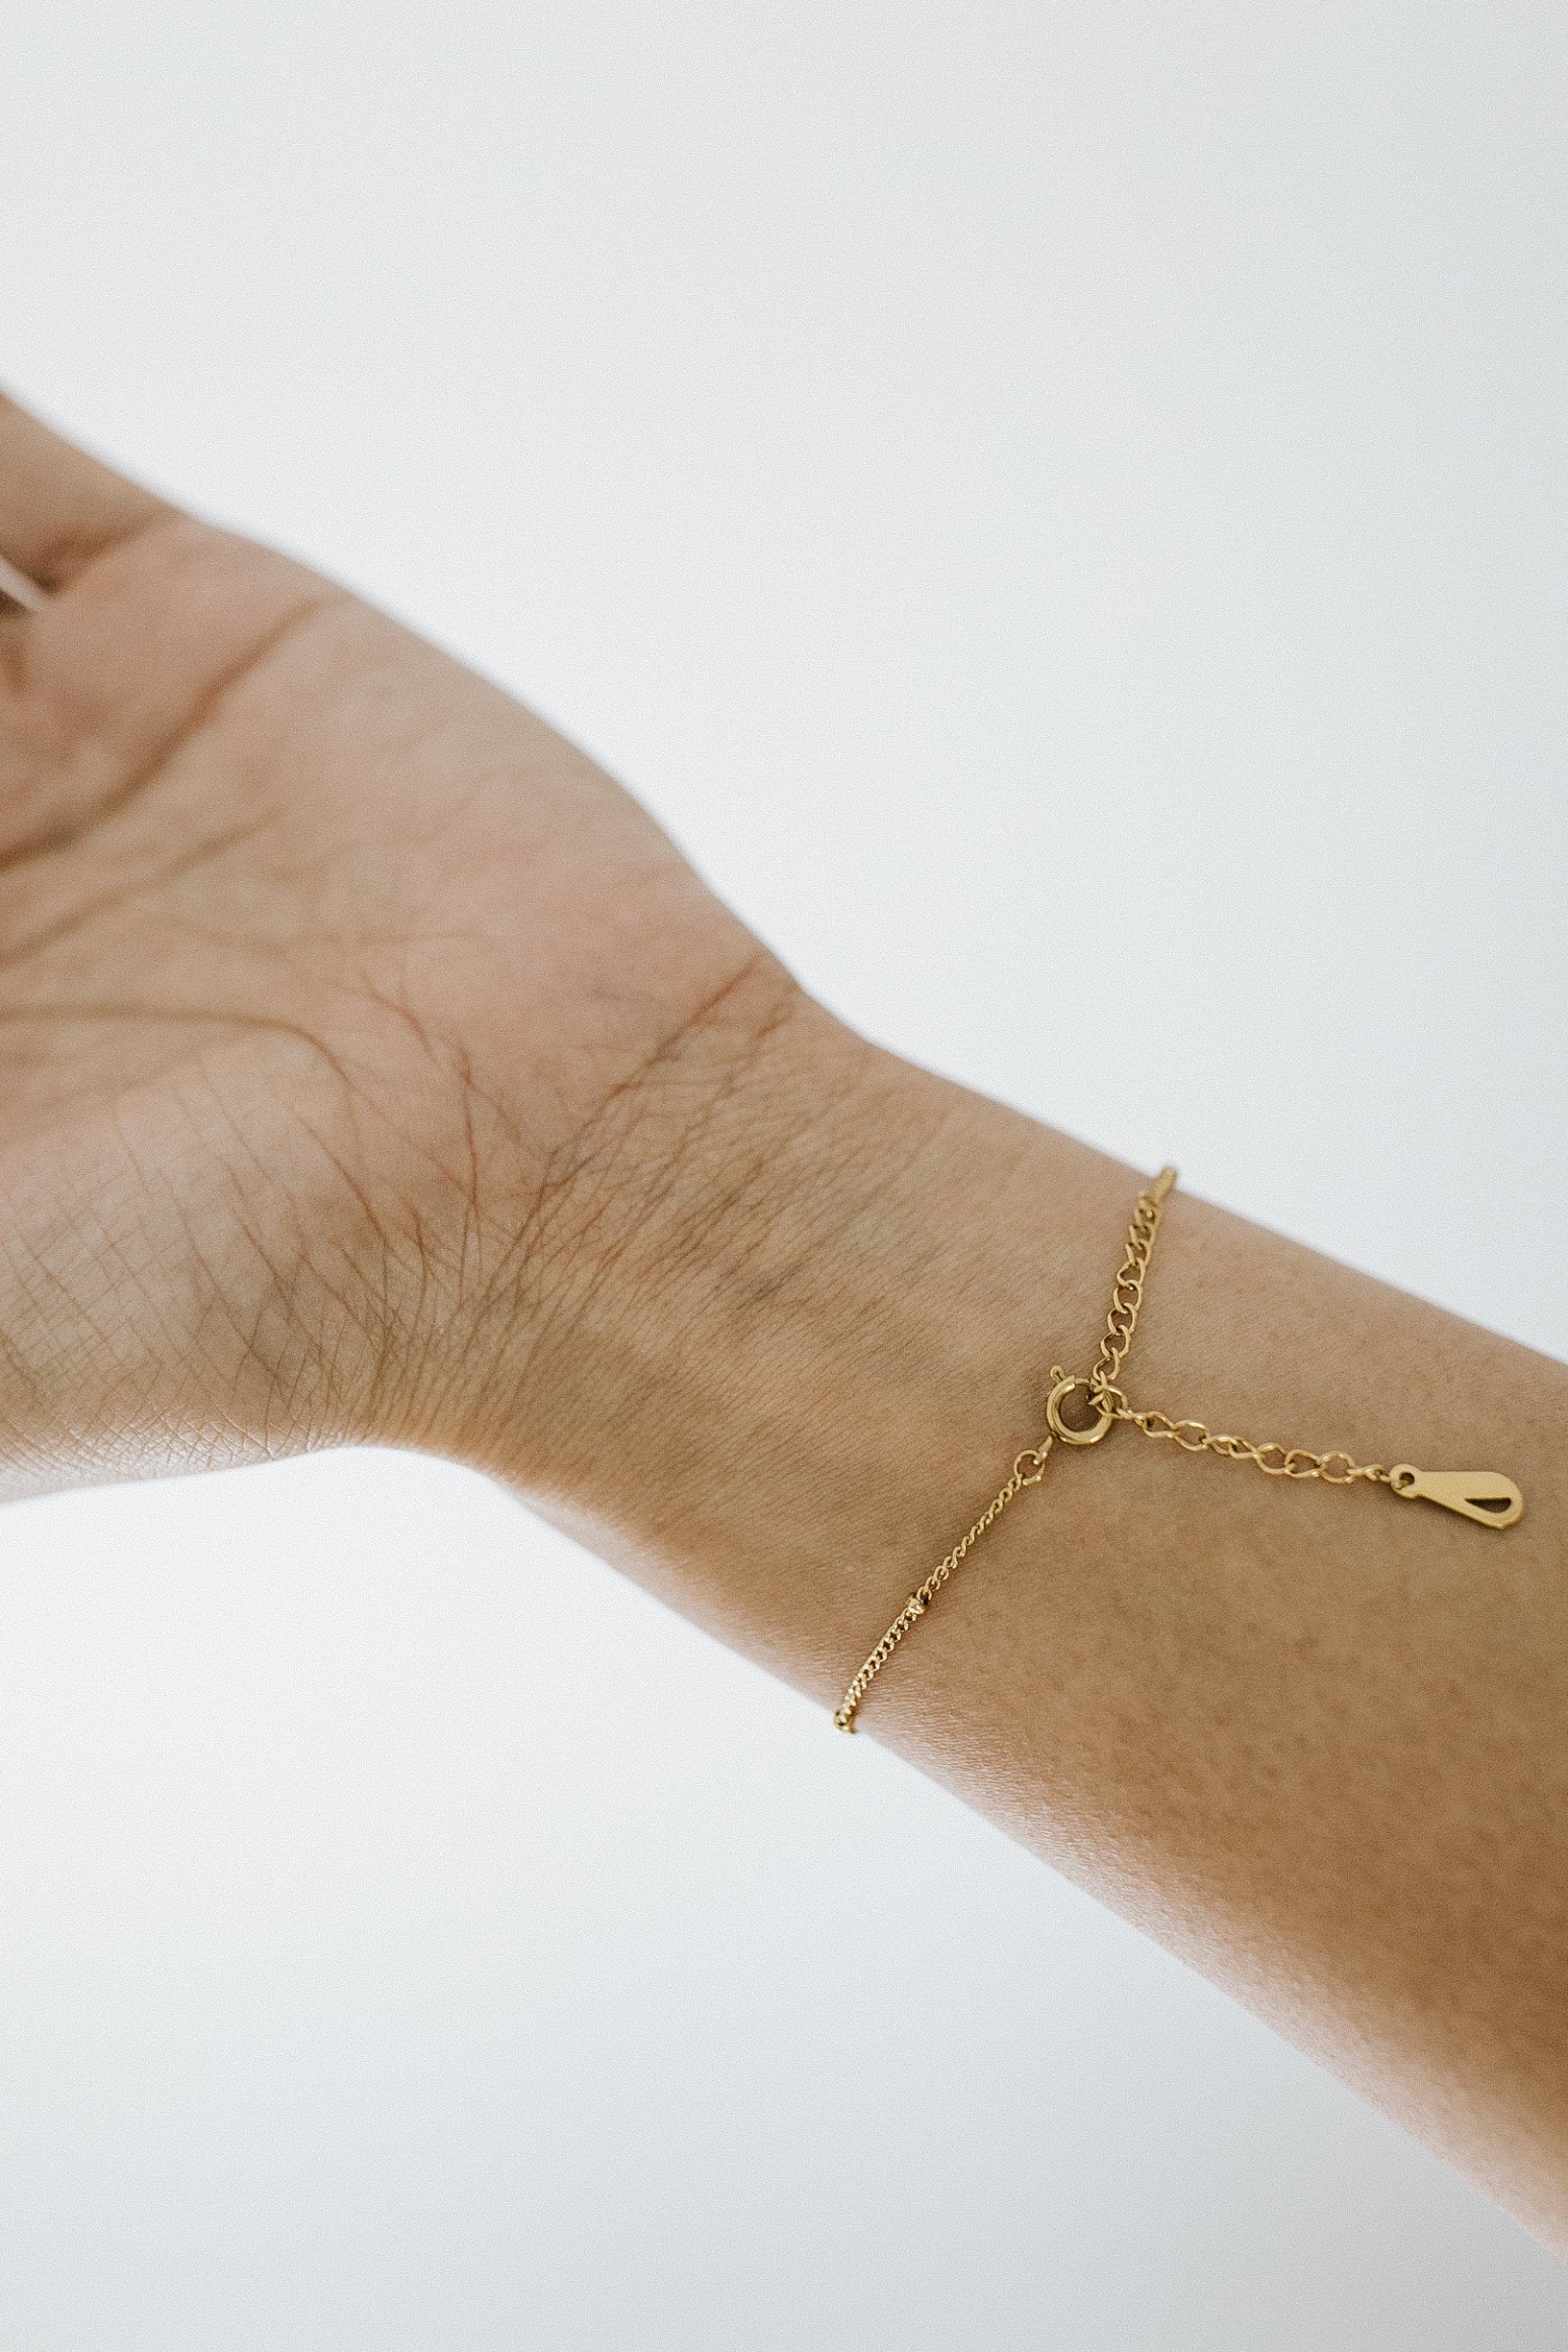 Tinley Beaded Bracelet - Gold